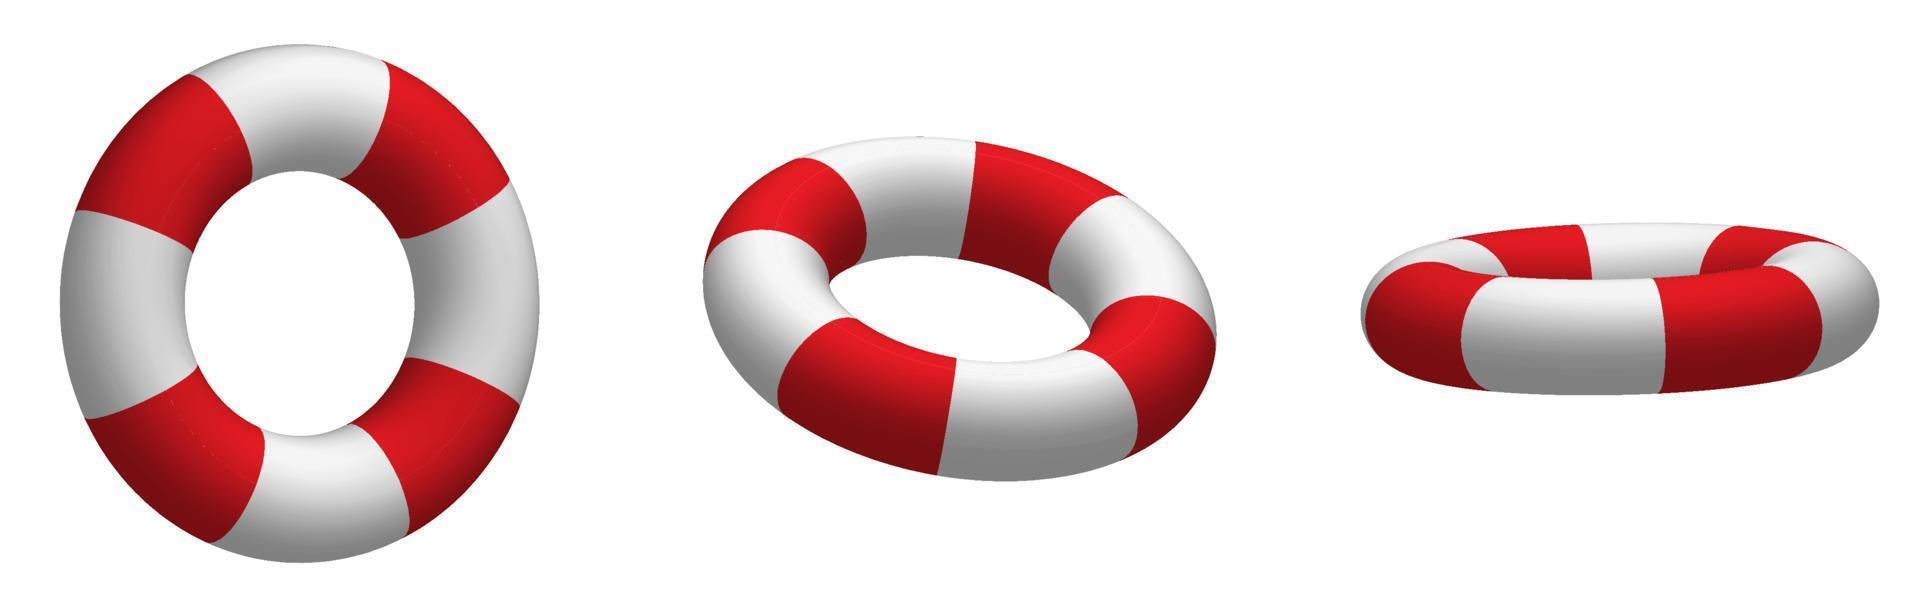 coleção de bóias salva-vidas de barco em aparência realista. resgate de afogamento em mar aberto. vetor branco vermelho em vários pontos de vista